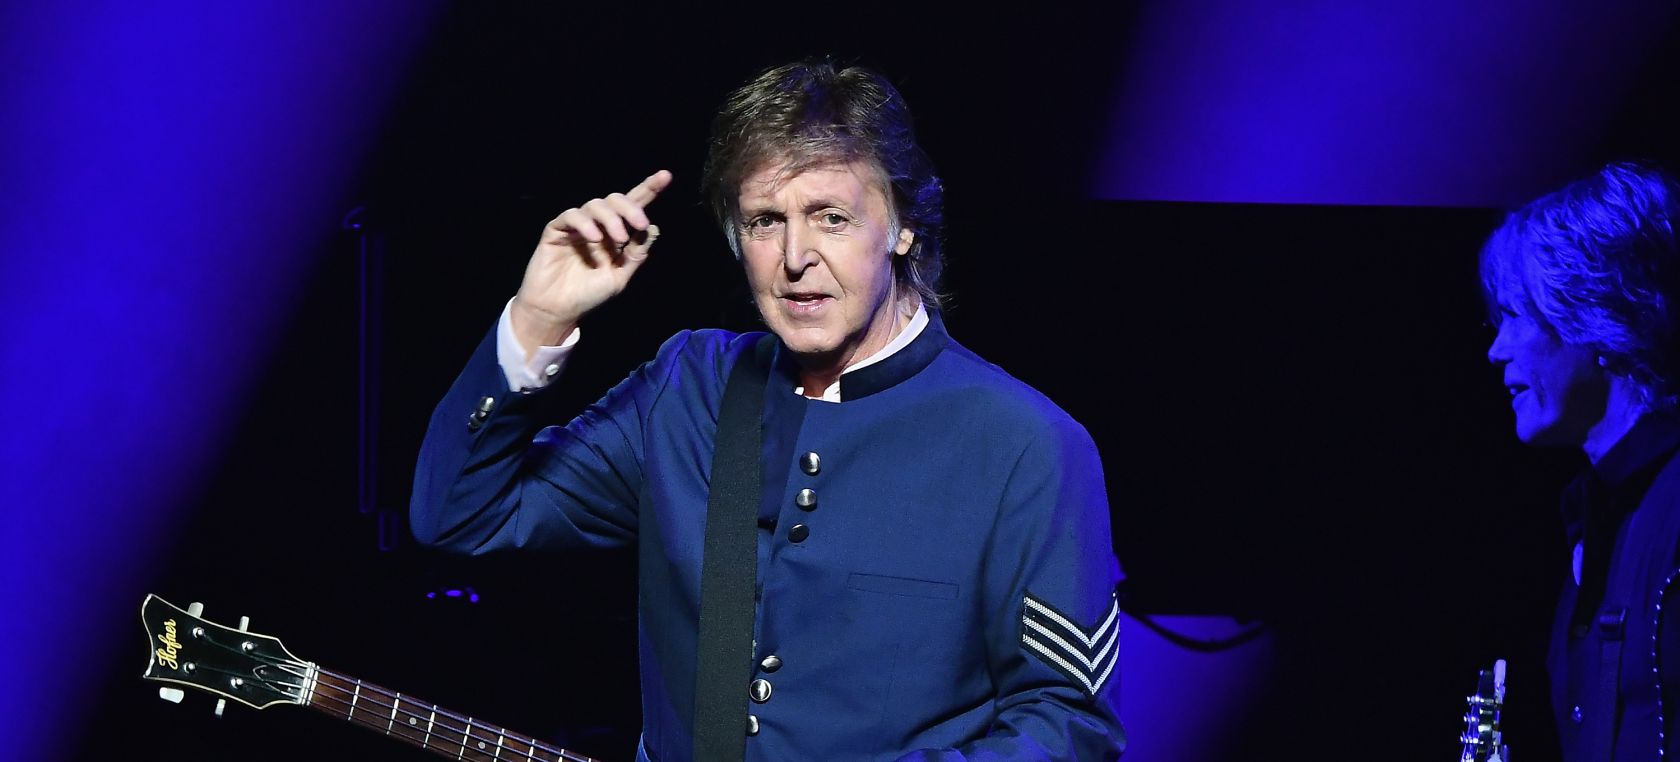 Paul McCartney canta un dueto con John Lennon en su regreso a los escenarios